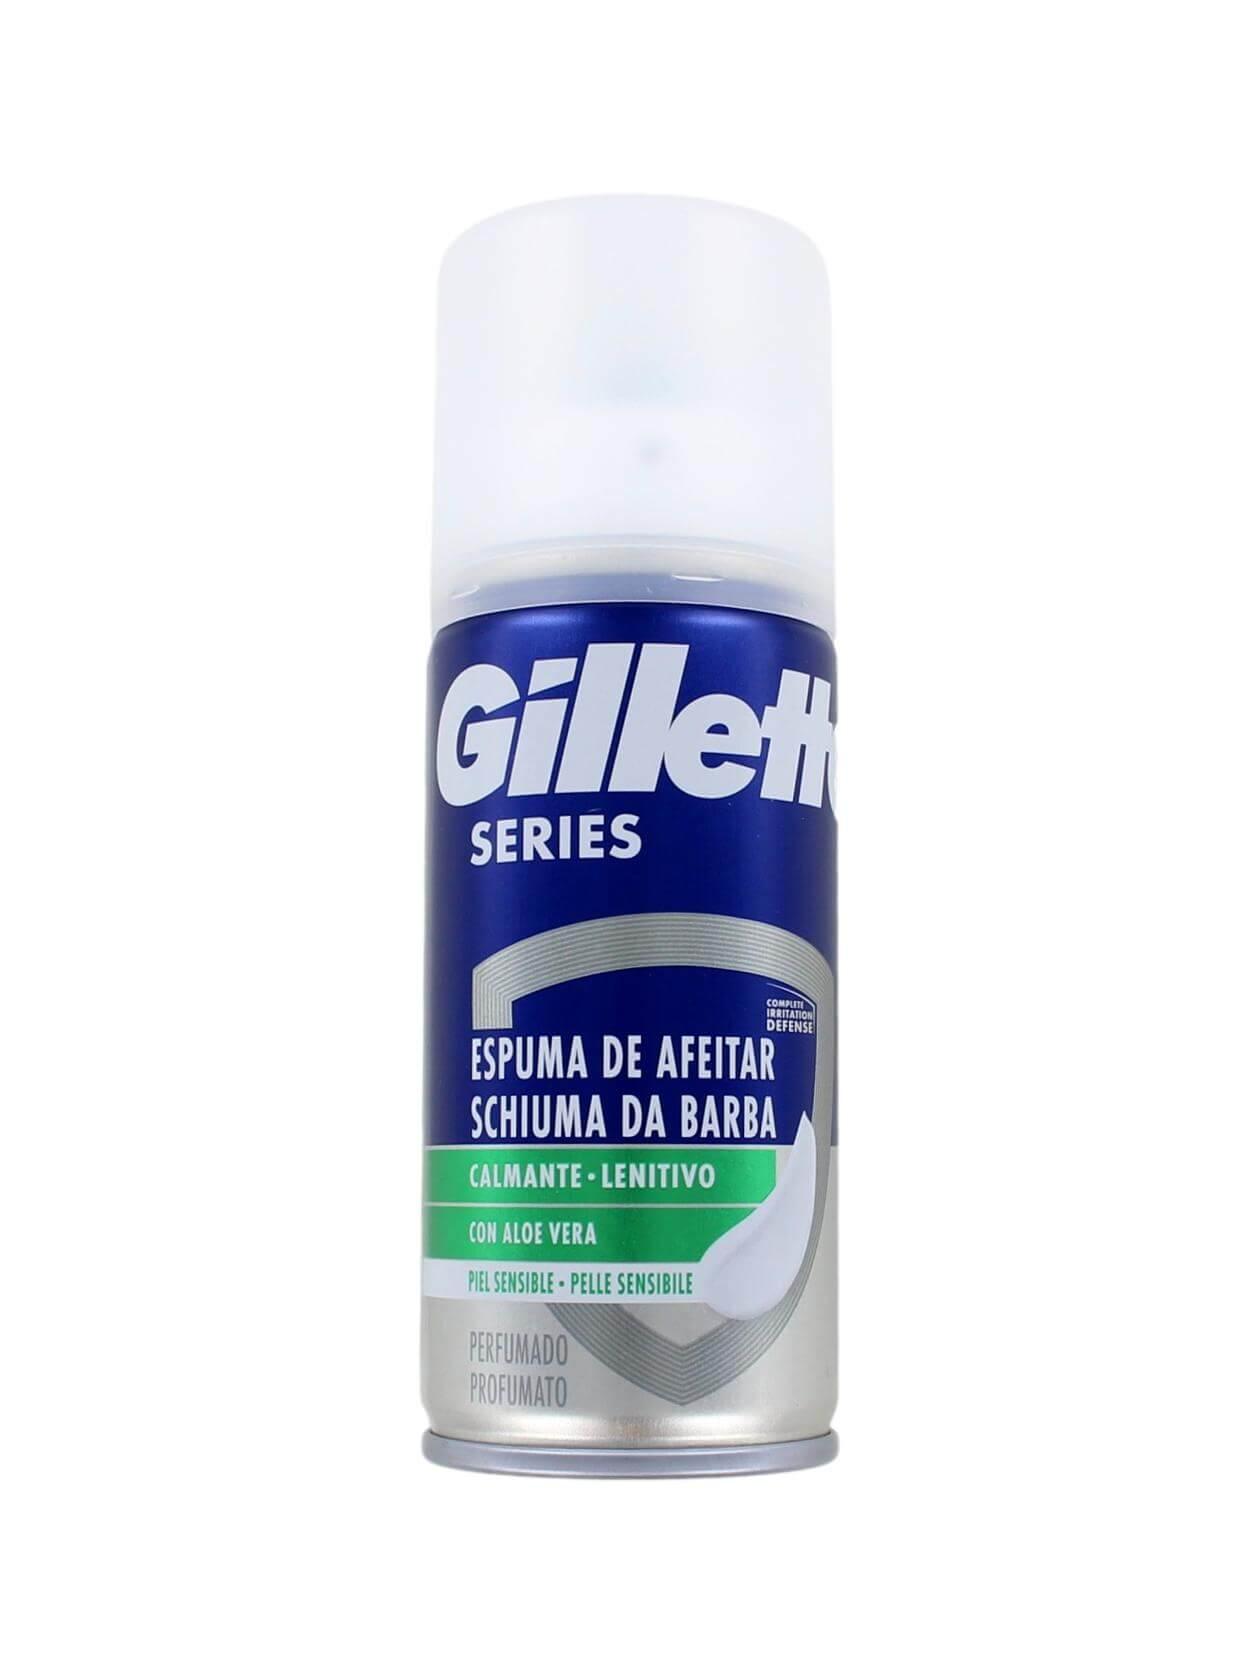 Selected image for Gillette Pena za brijanje, Sensitive, 100ml